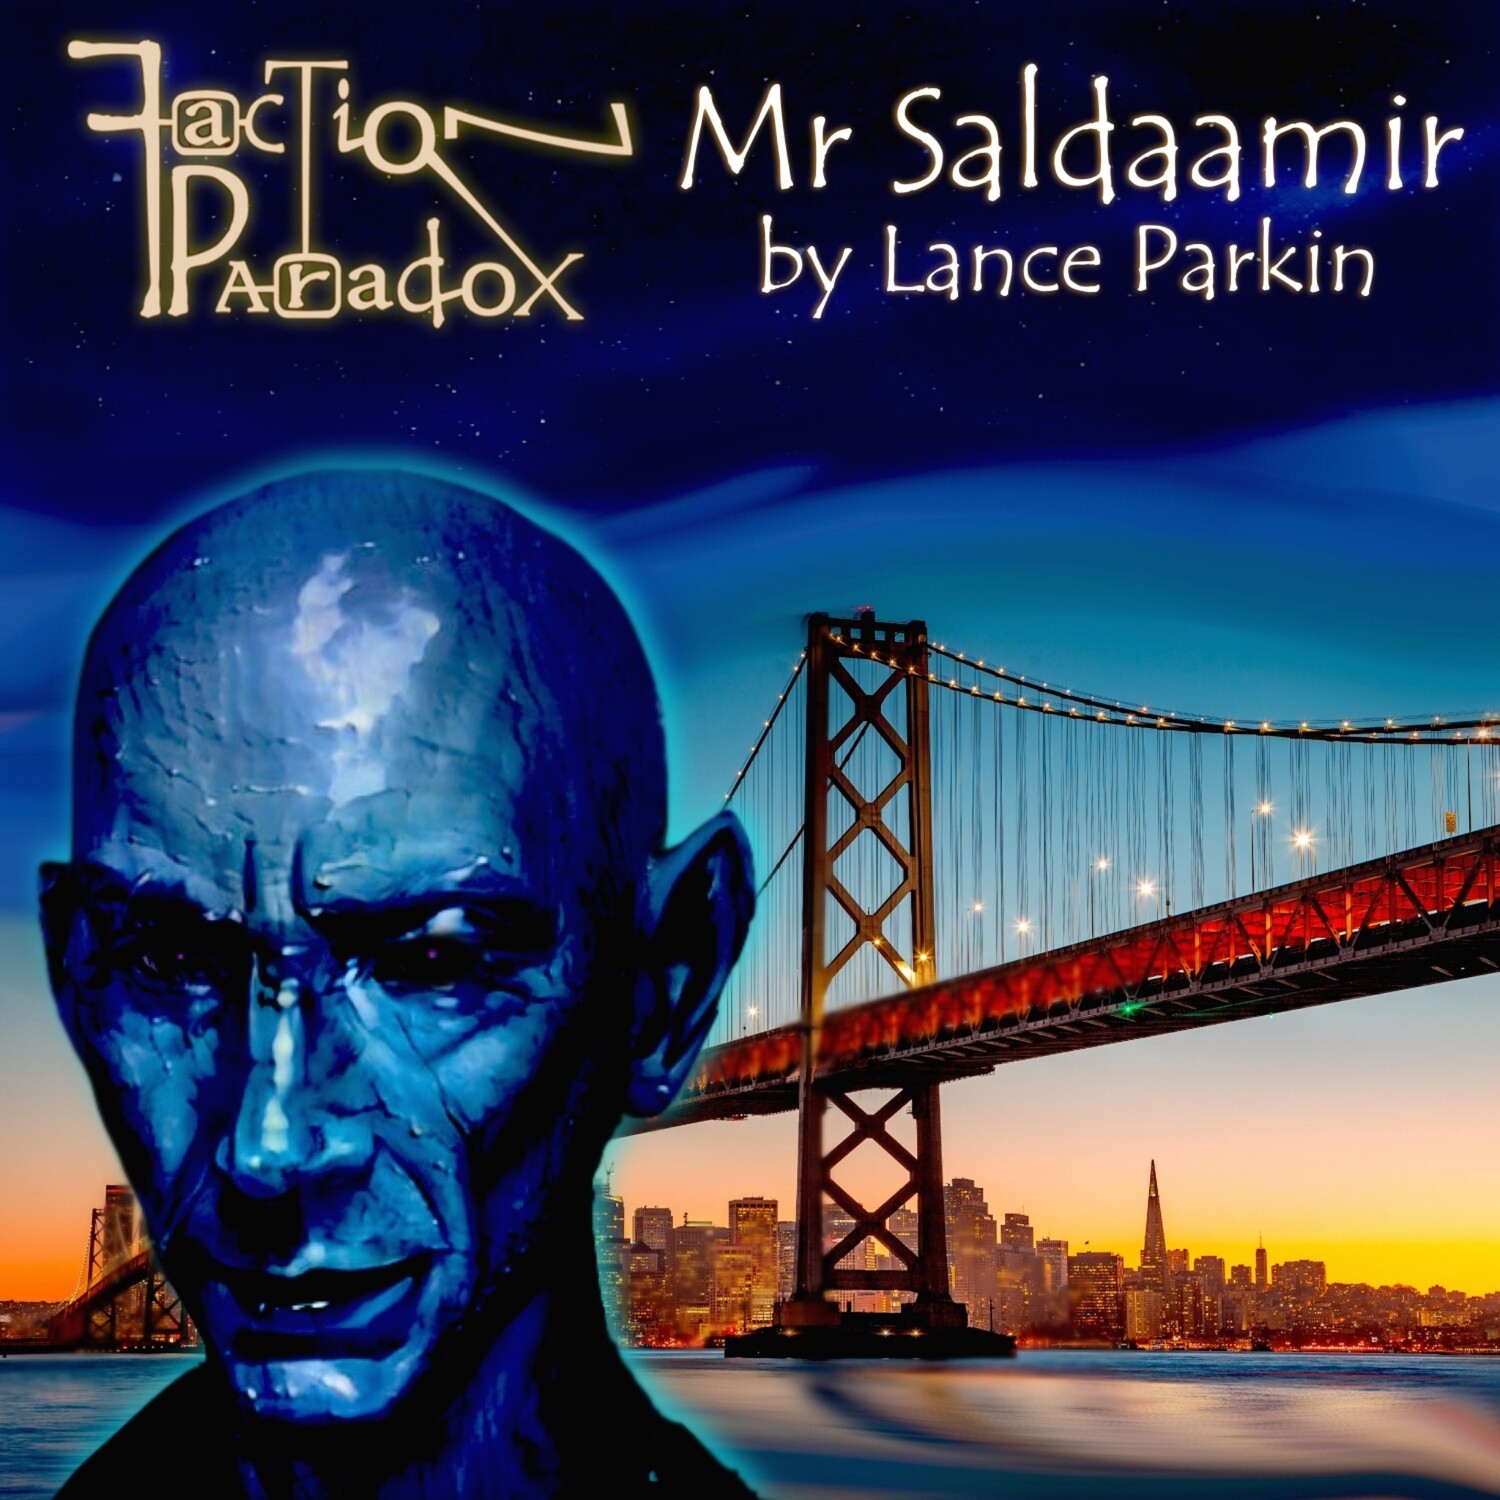 Faction Paradox: Mr Saldaamir (AUDIO DOWNLOAD)